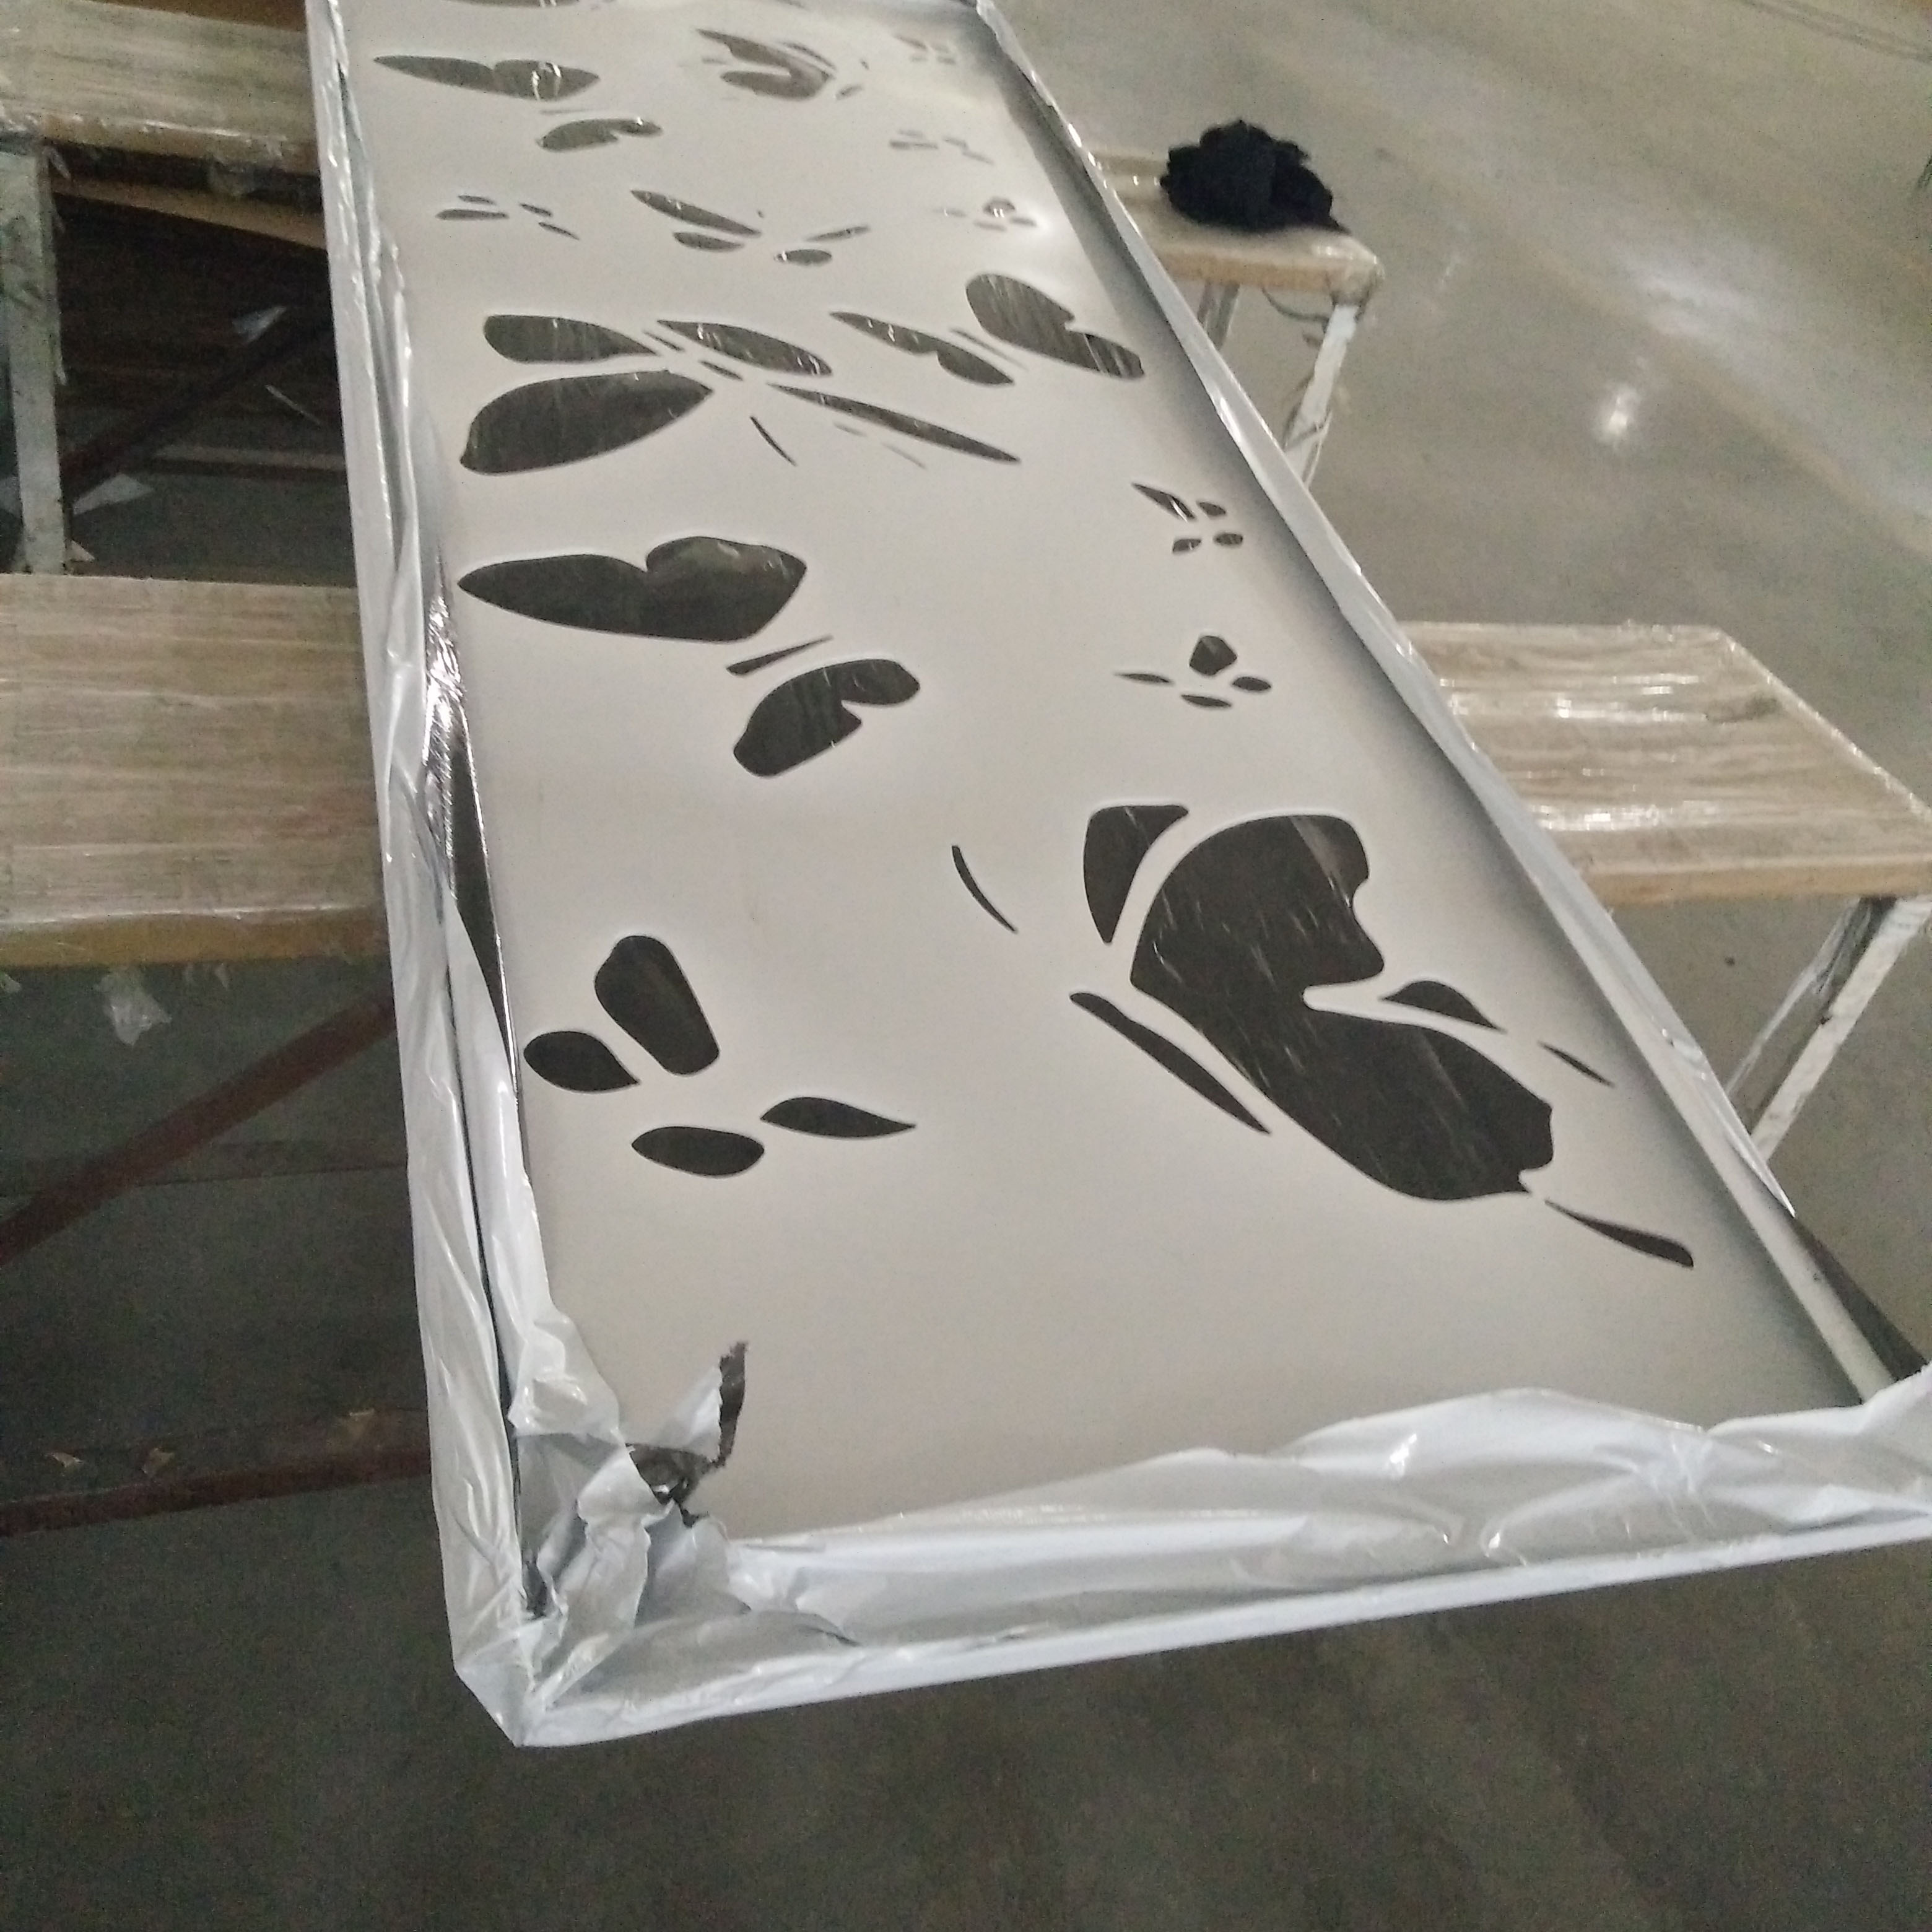 镂空雕花铝单板异形冲孔铝板工厂